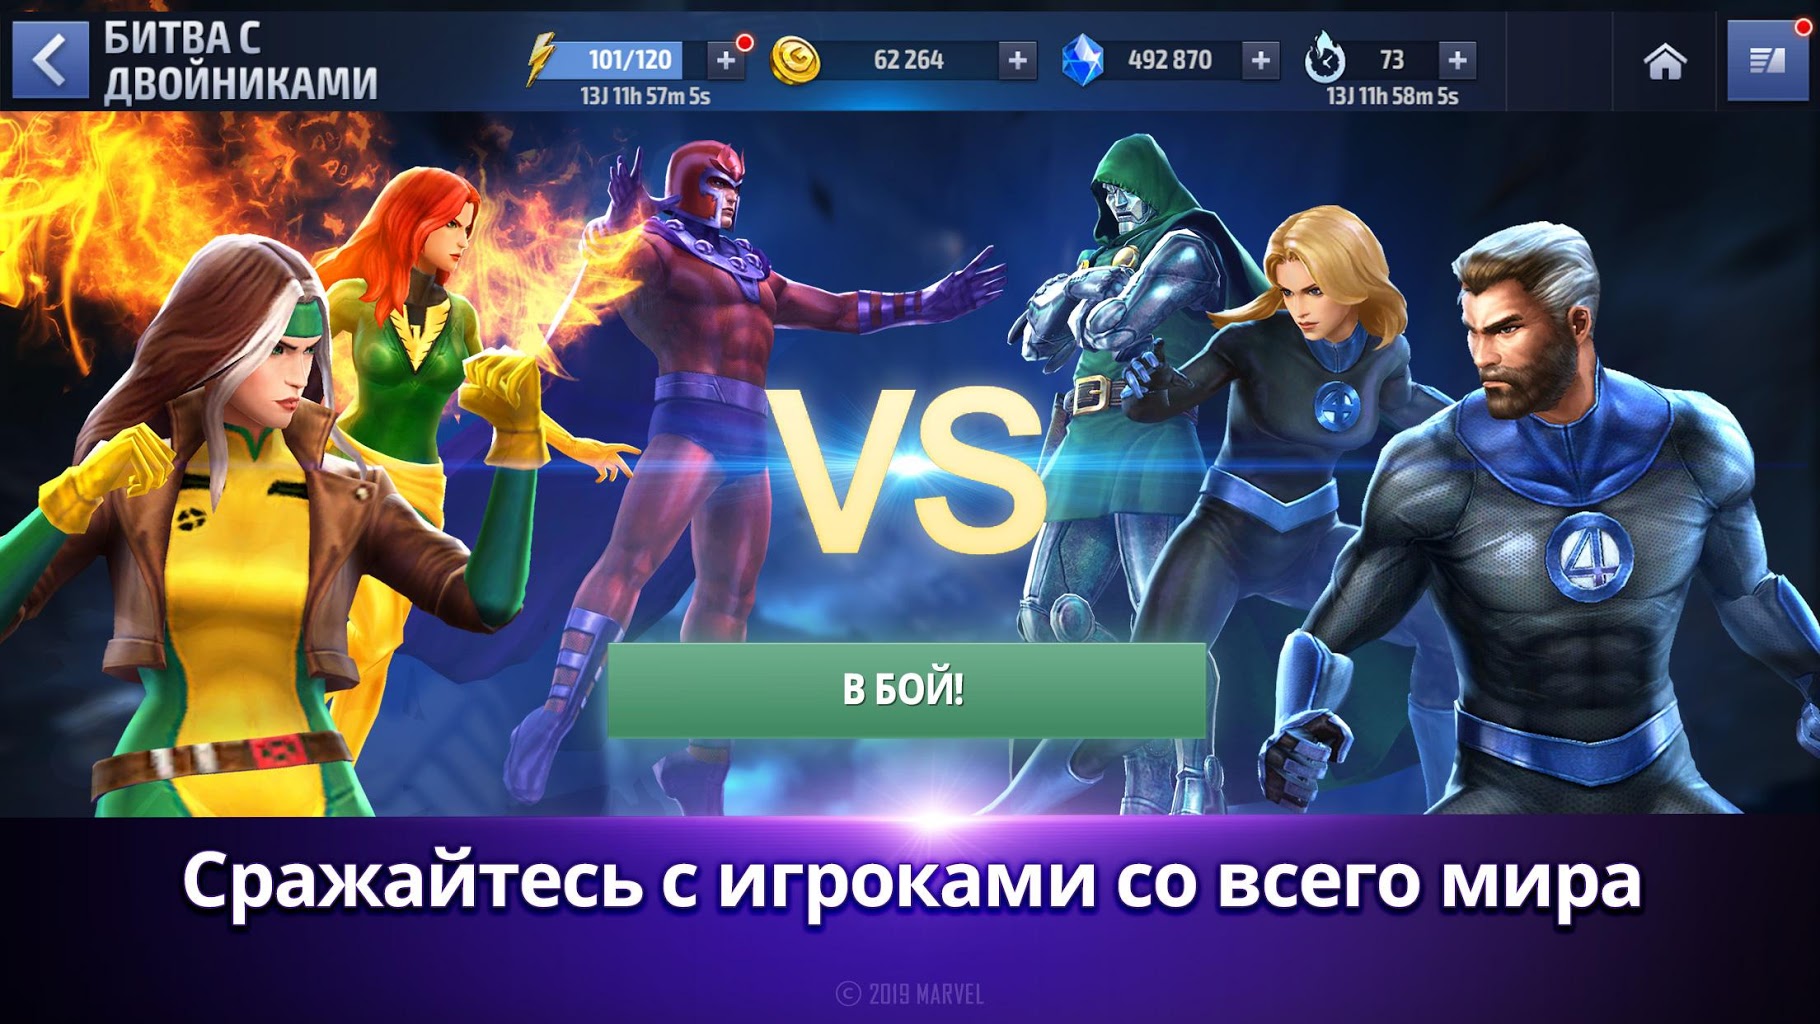 Marvel future fight mod apk v5 0.0 download